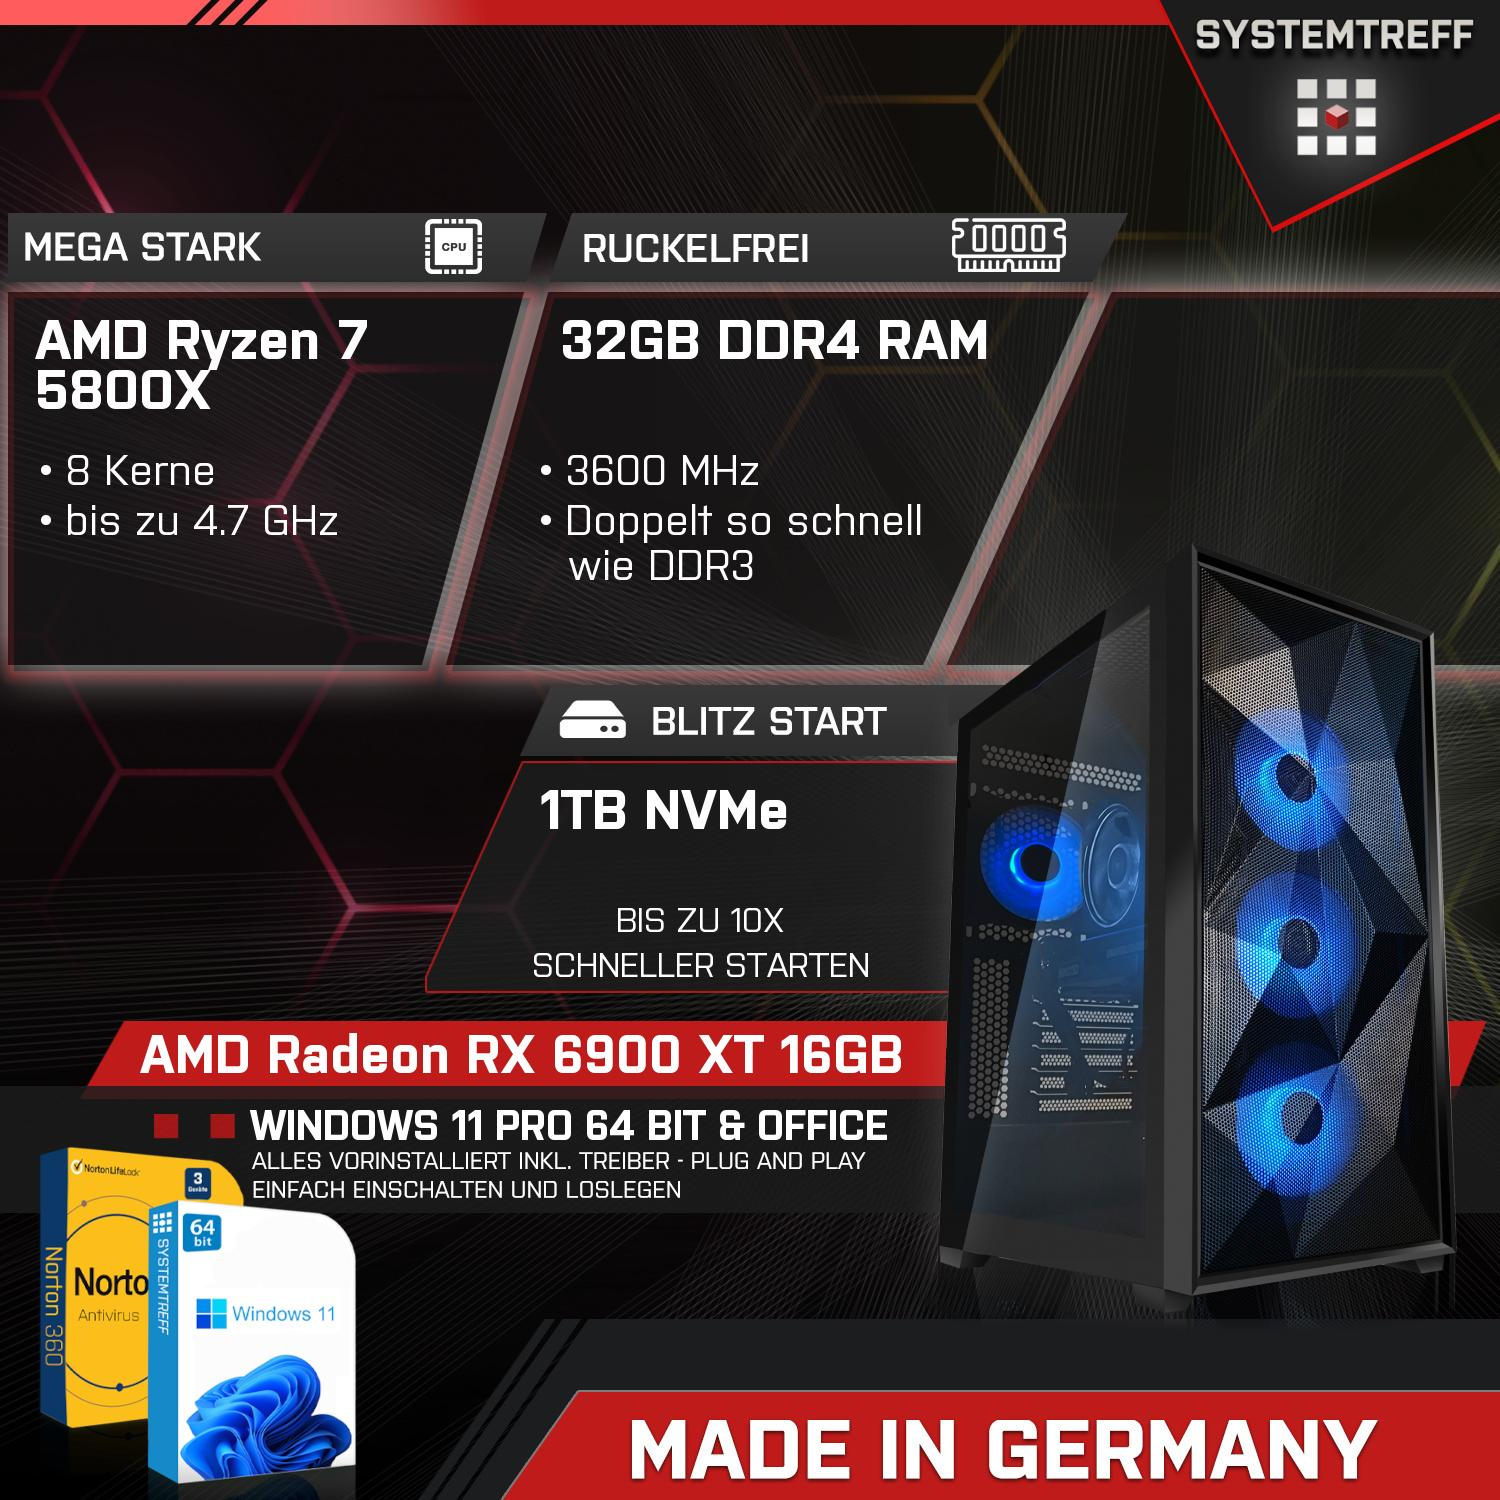 SYSTEMTREFF Gaming Komplett 16GB Radeon mit GDDR6, GB Ryzen Komplett 6900 16 AMD PC GB 1000 5800X, 5800X XT AMD RX GB mSSD, RAM, Prozessor, 7 32